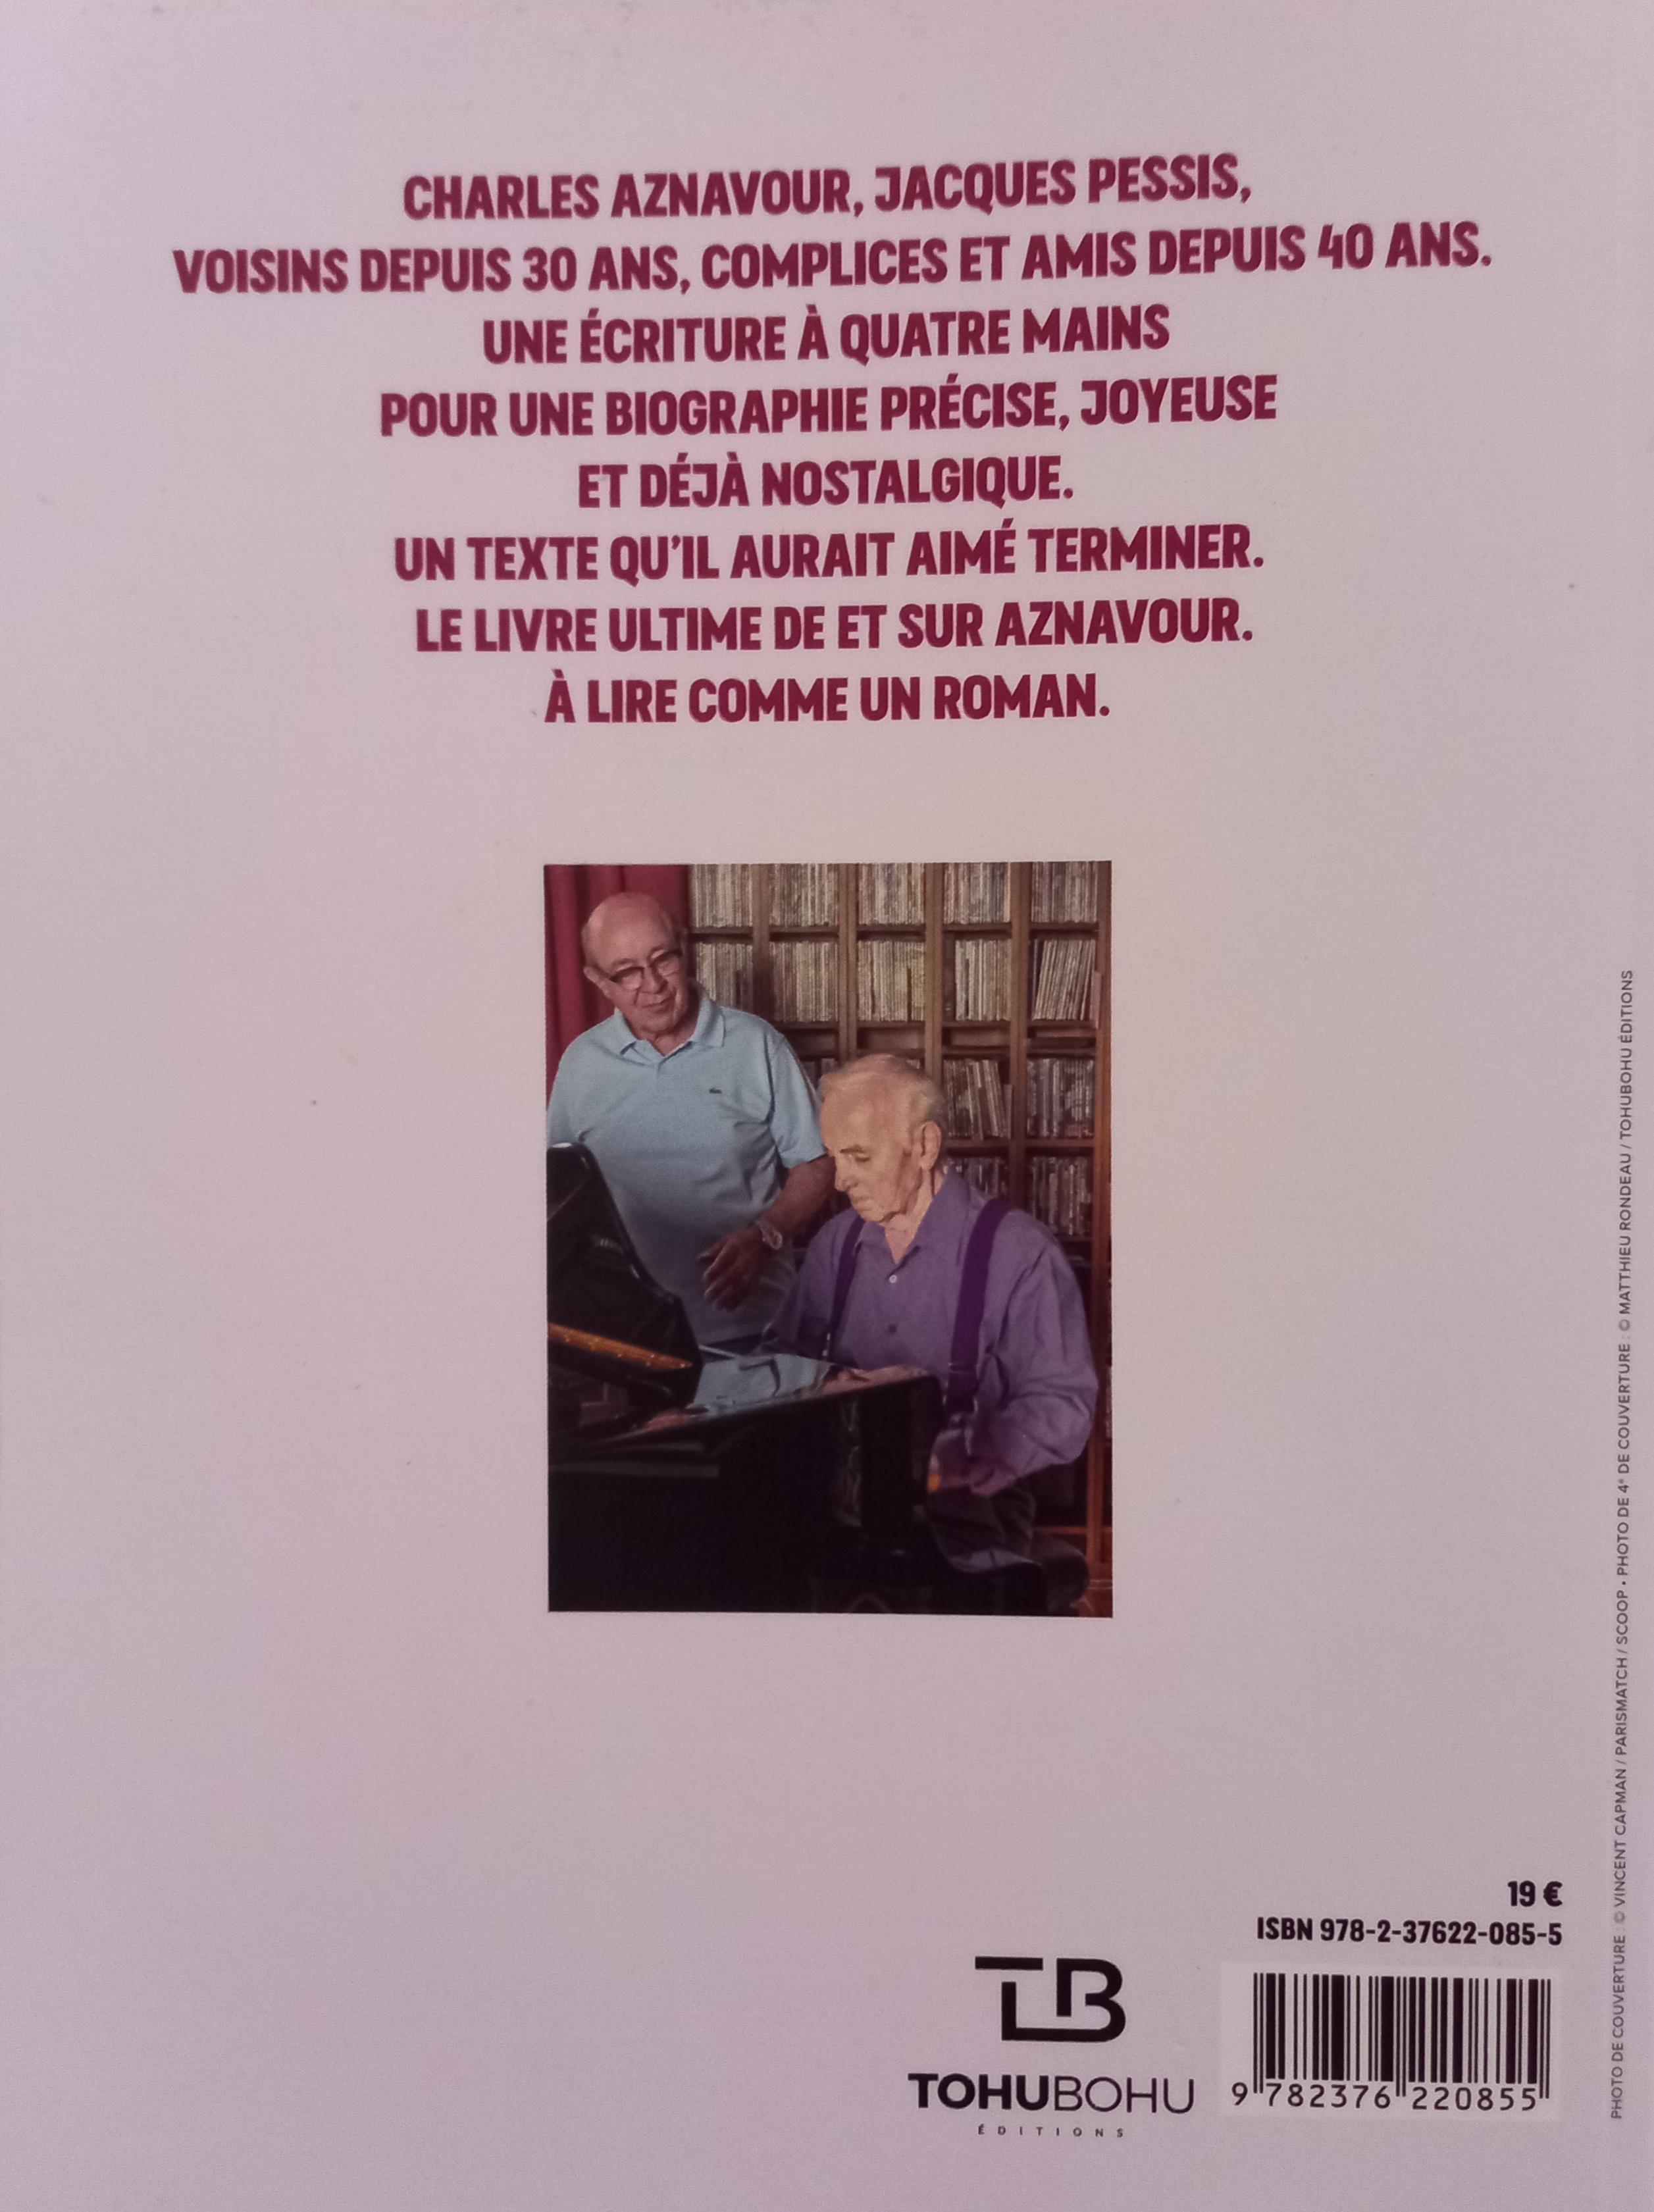 troc de troc biographie charles aznavour image 1